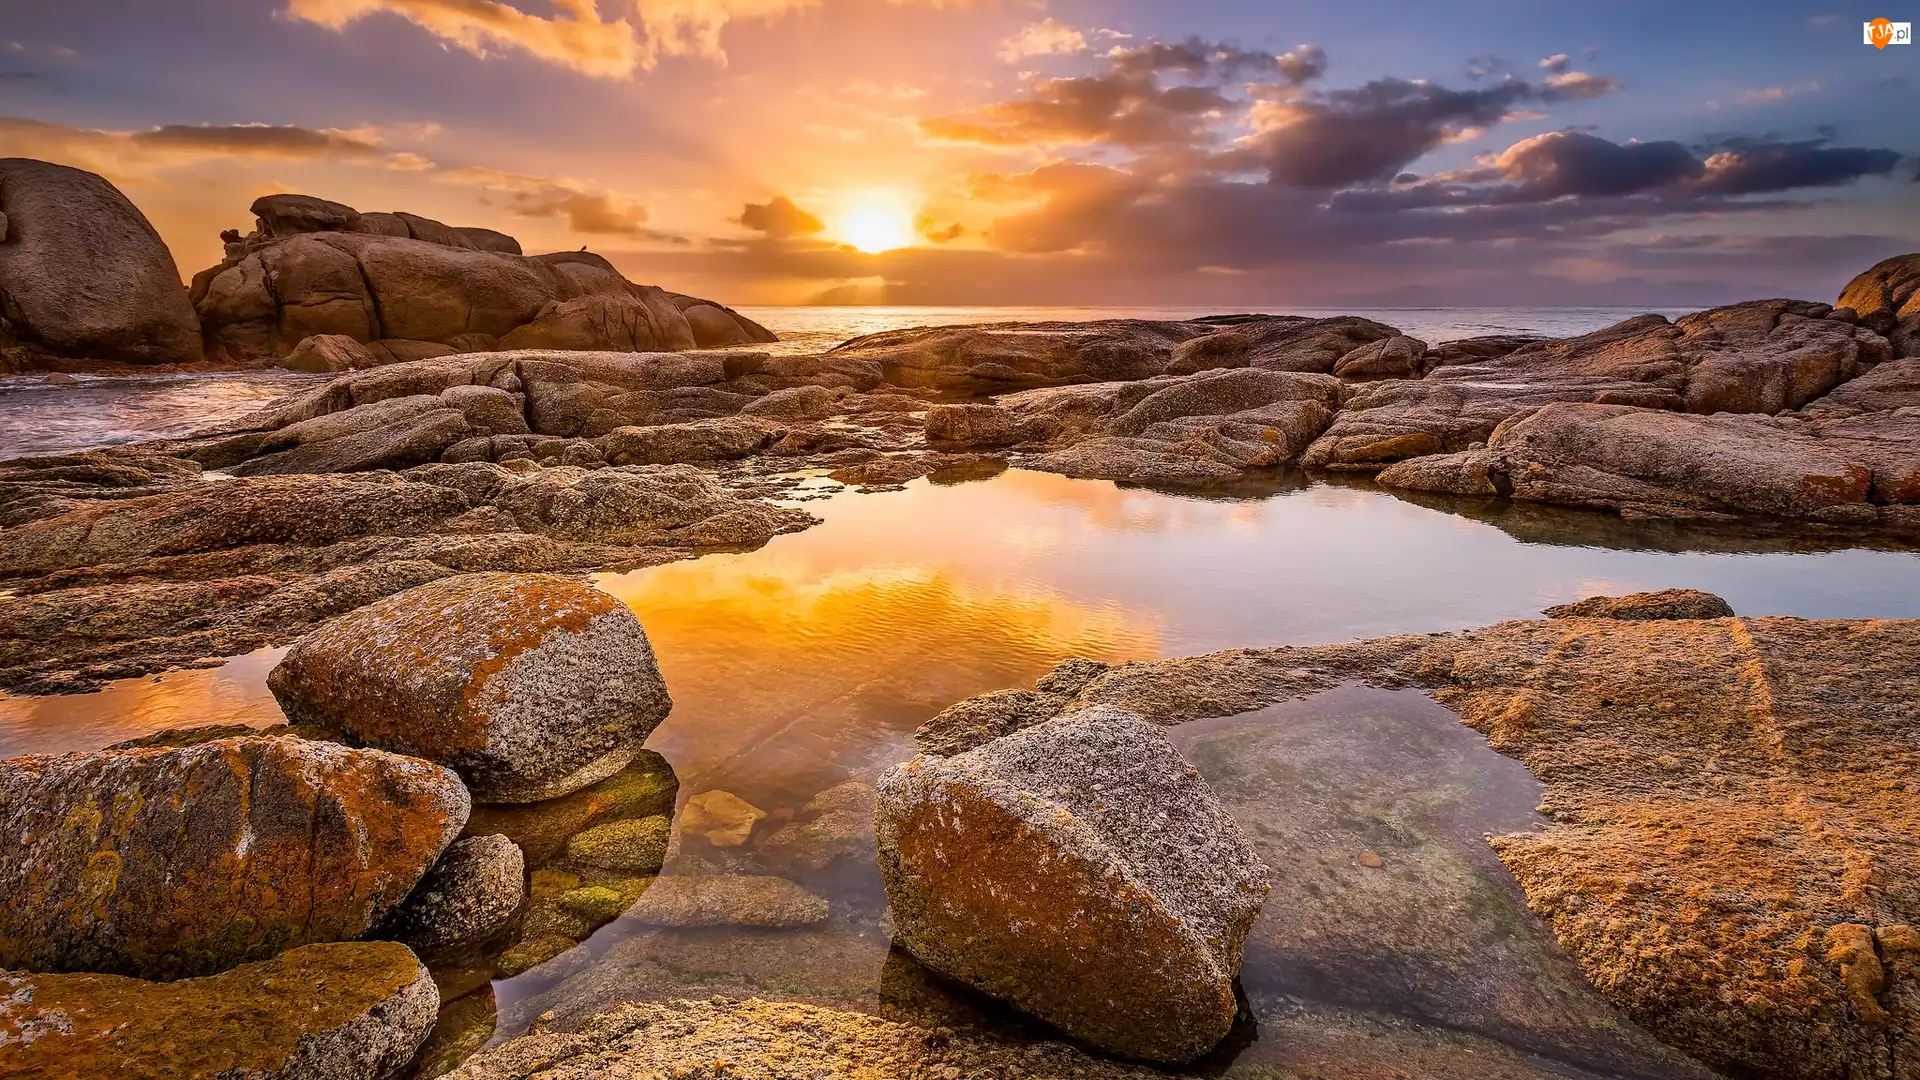 Plaża Boulders Beach, Morze, Republika Południowej Afryki, Kamienie, Półwysep Przylądkowy, Zachód słońca